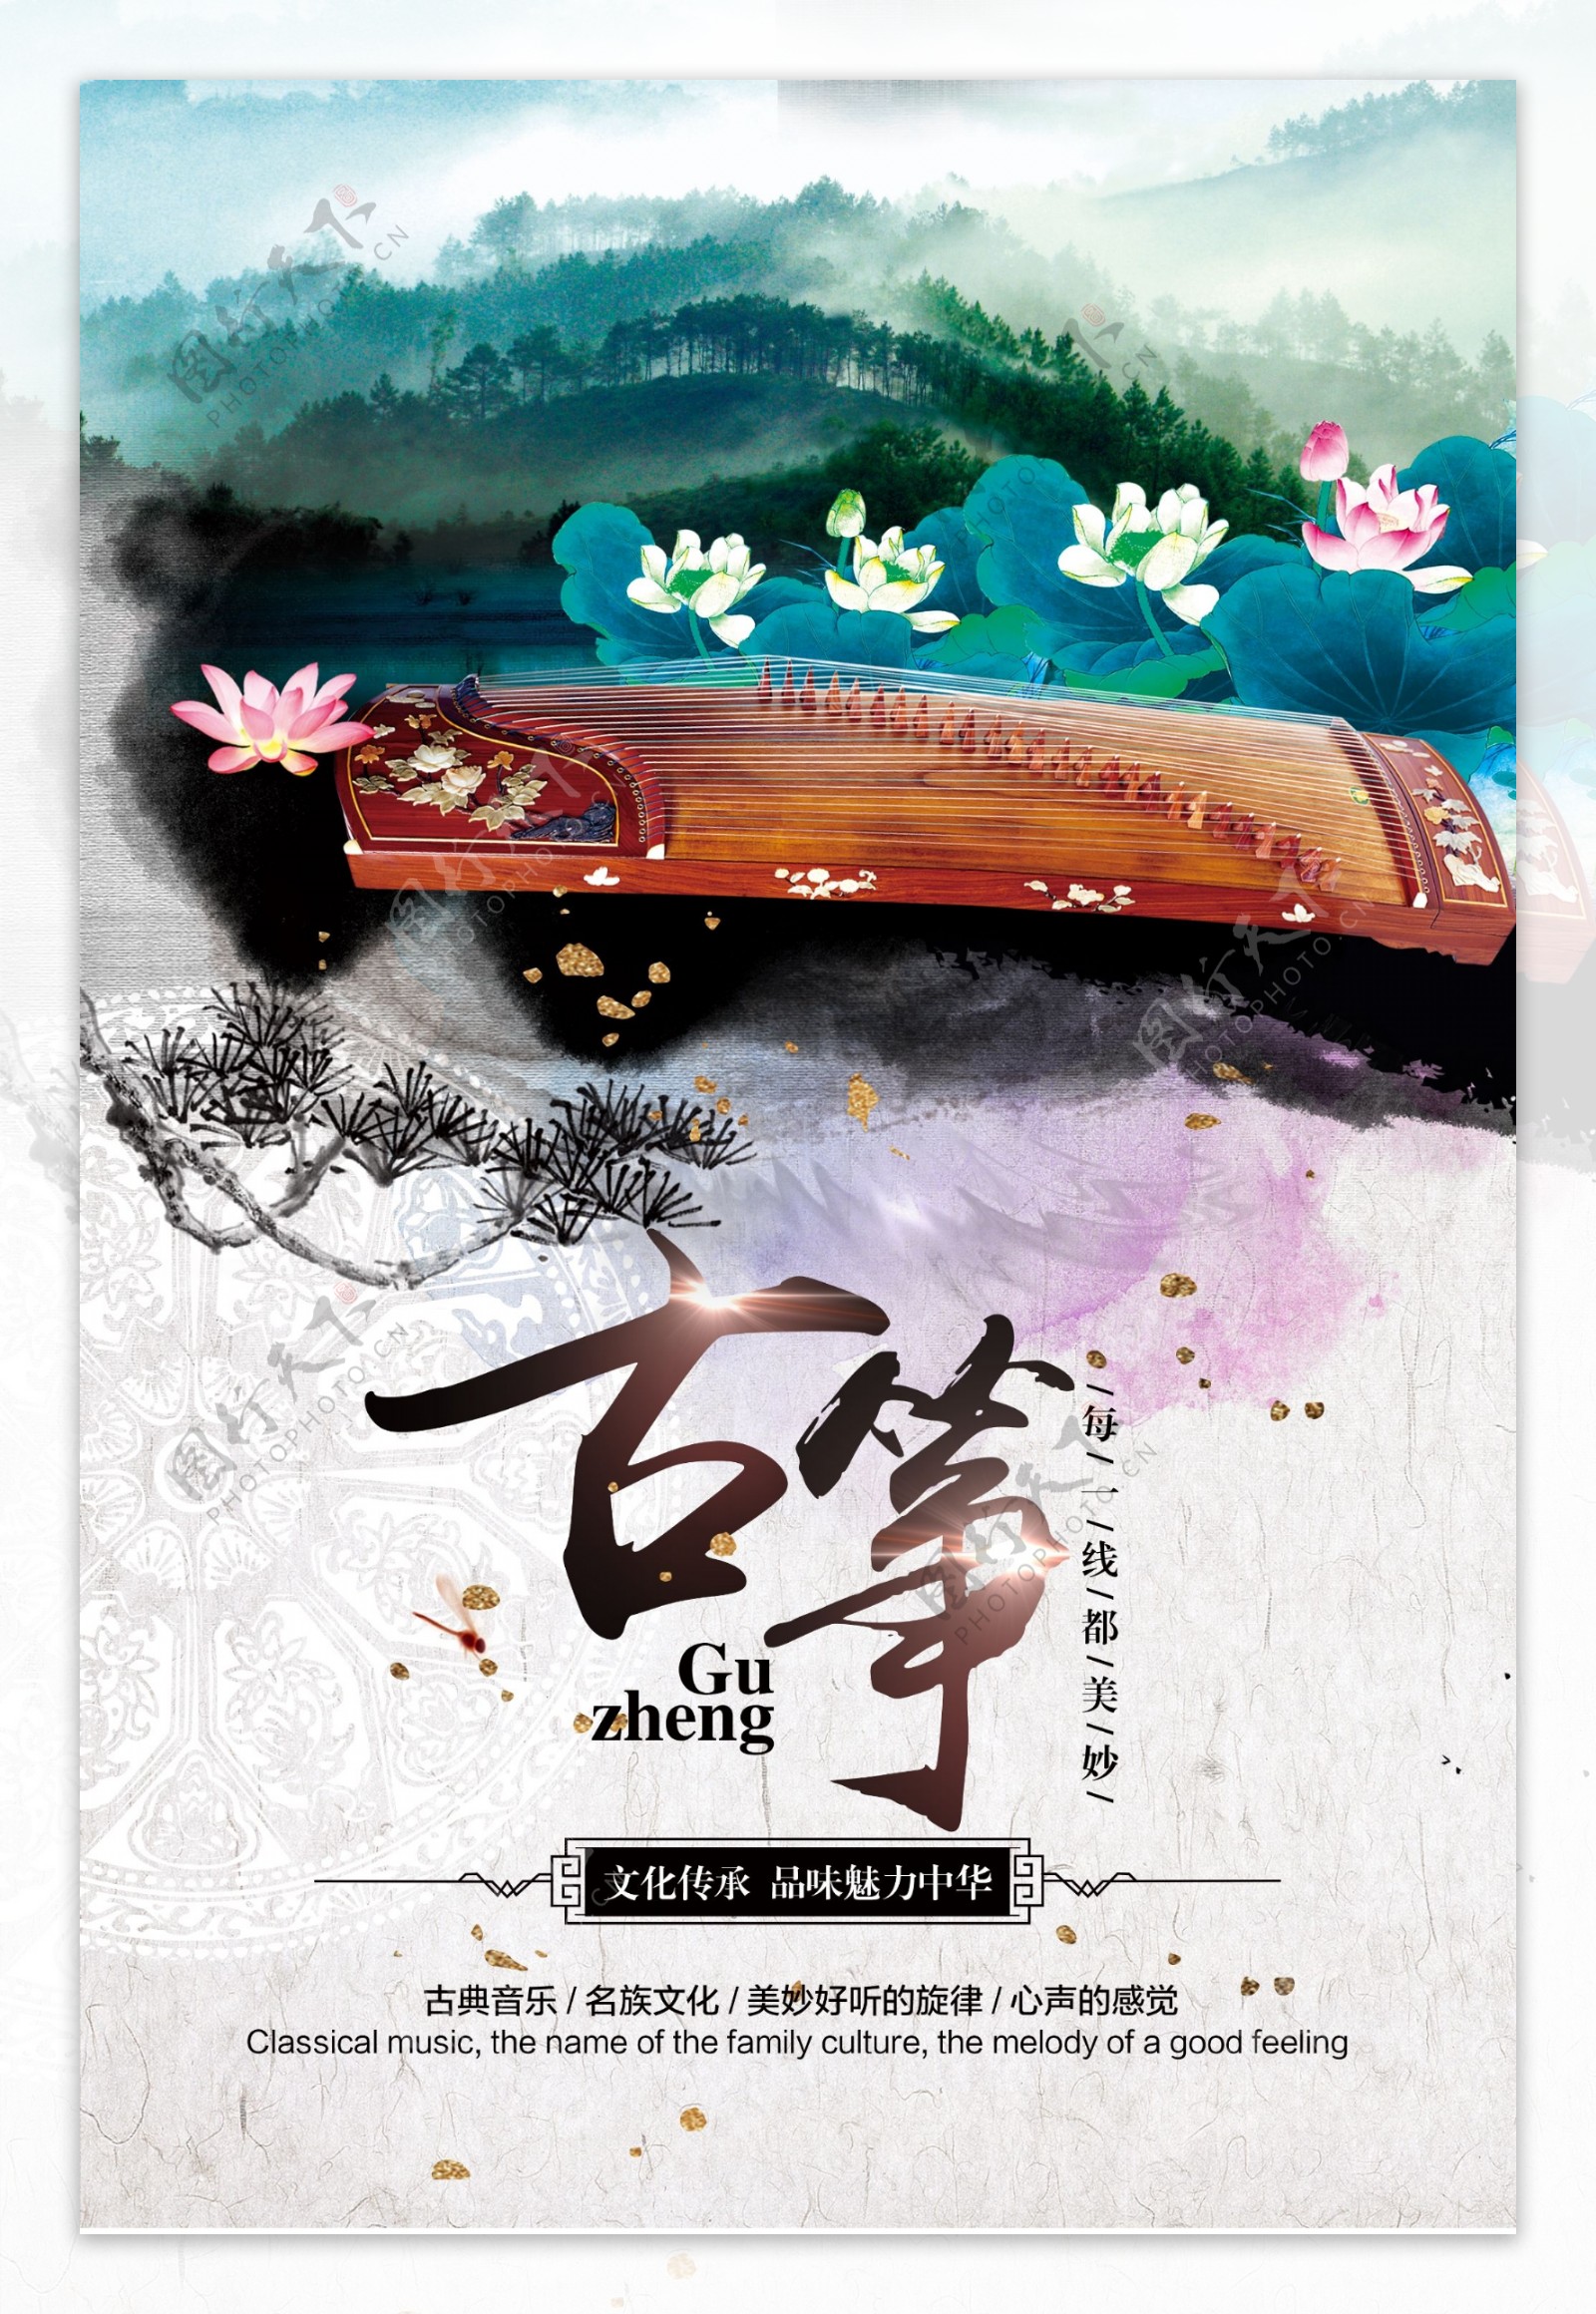 中国风彩色水墨古筝海报